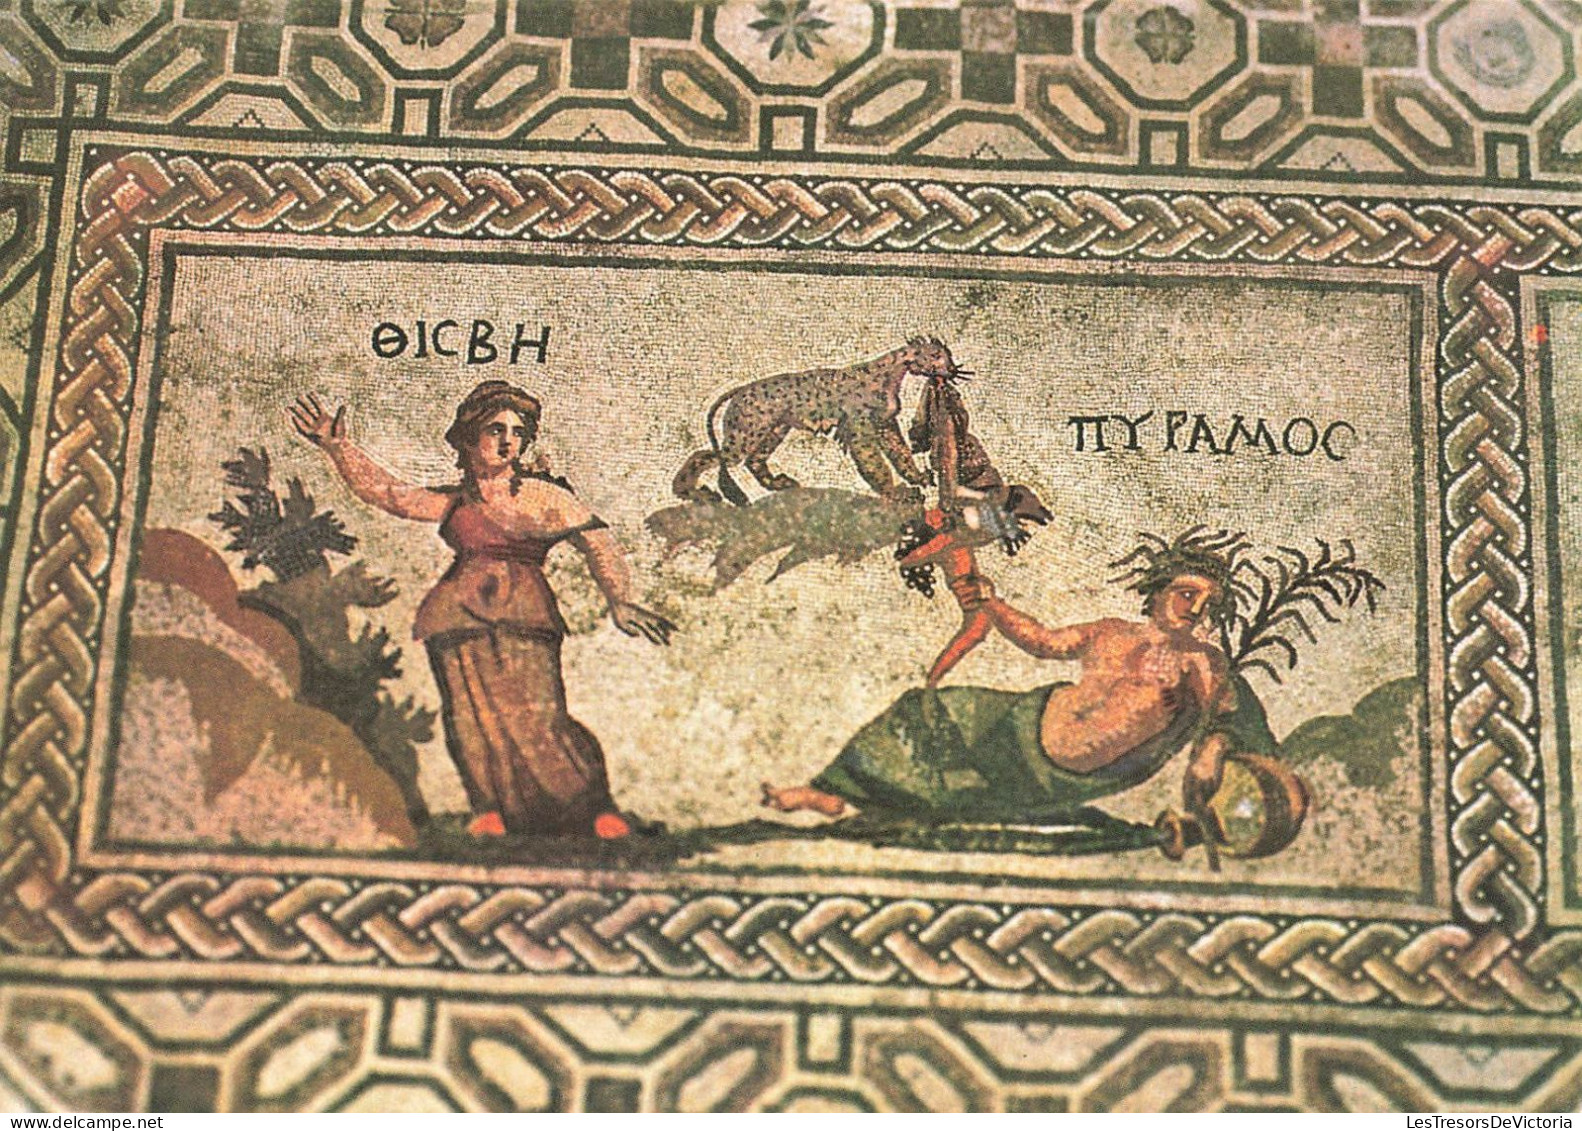 CHYPRE - Pyrame Et Thisbè - Mosaïque De La Maison De Dionysos à Paphos - 3e Siècle Ap. J.C - Colorisé - Carte Postale - Cyprus